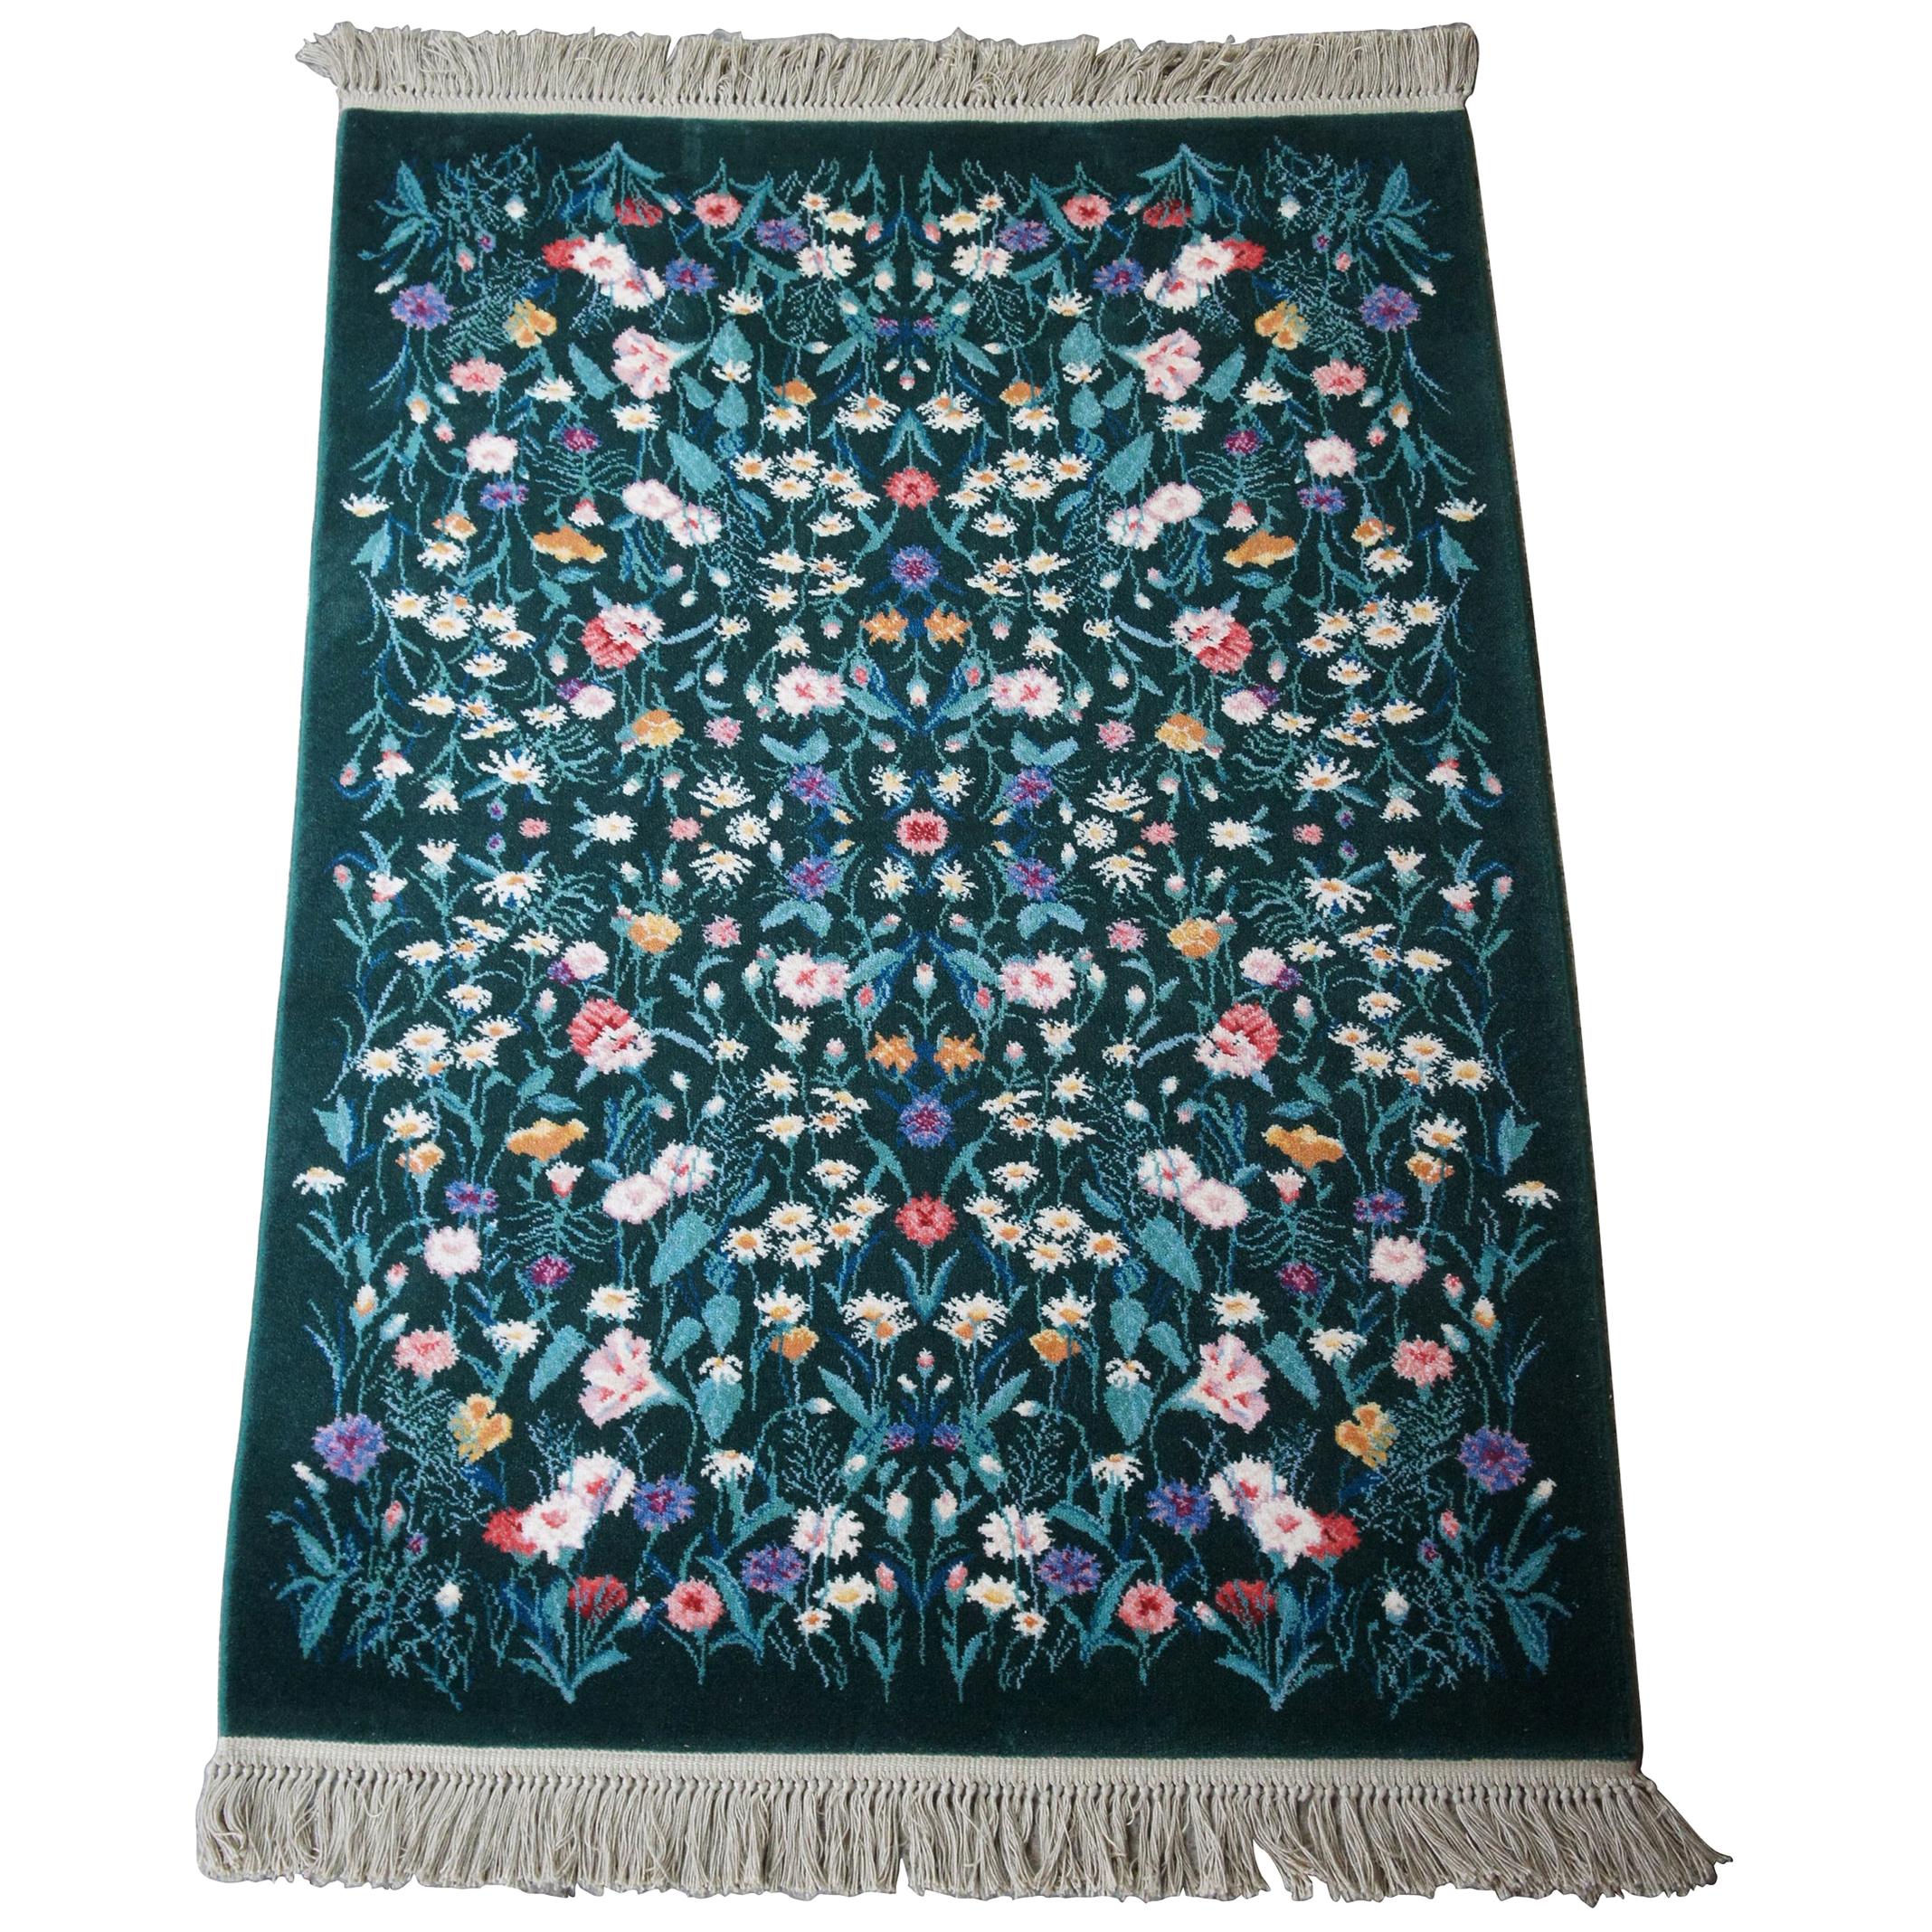 Karastan 100% Wool Garden of Eden Wildflowers Area Rug Carpet 509/9751